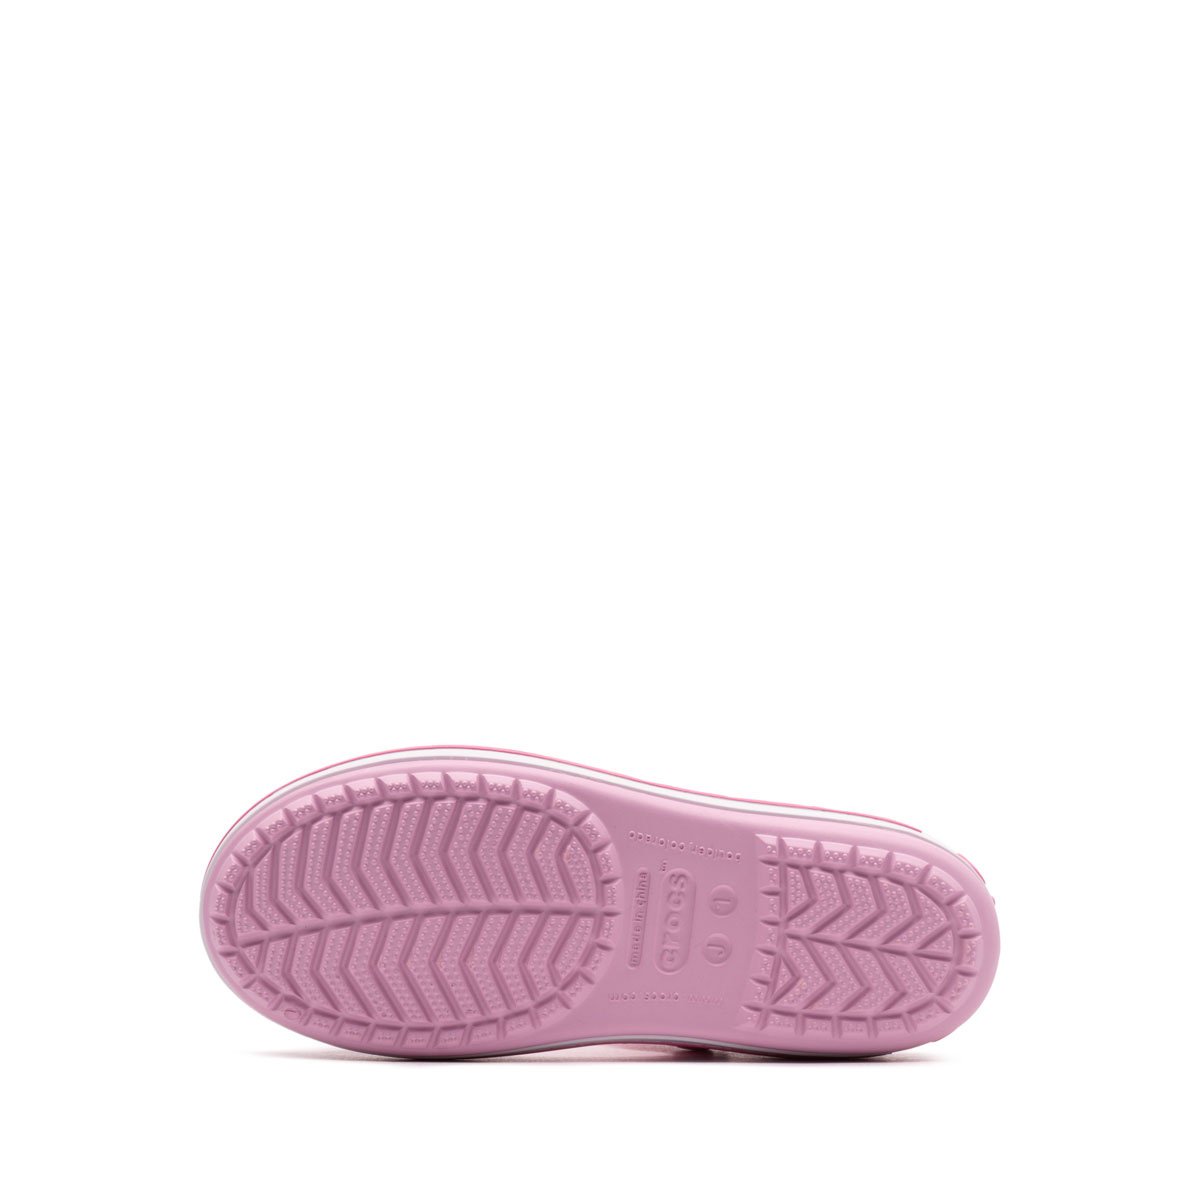 Crocs Crocband Sandal Детски сандали 12856-6GD